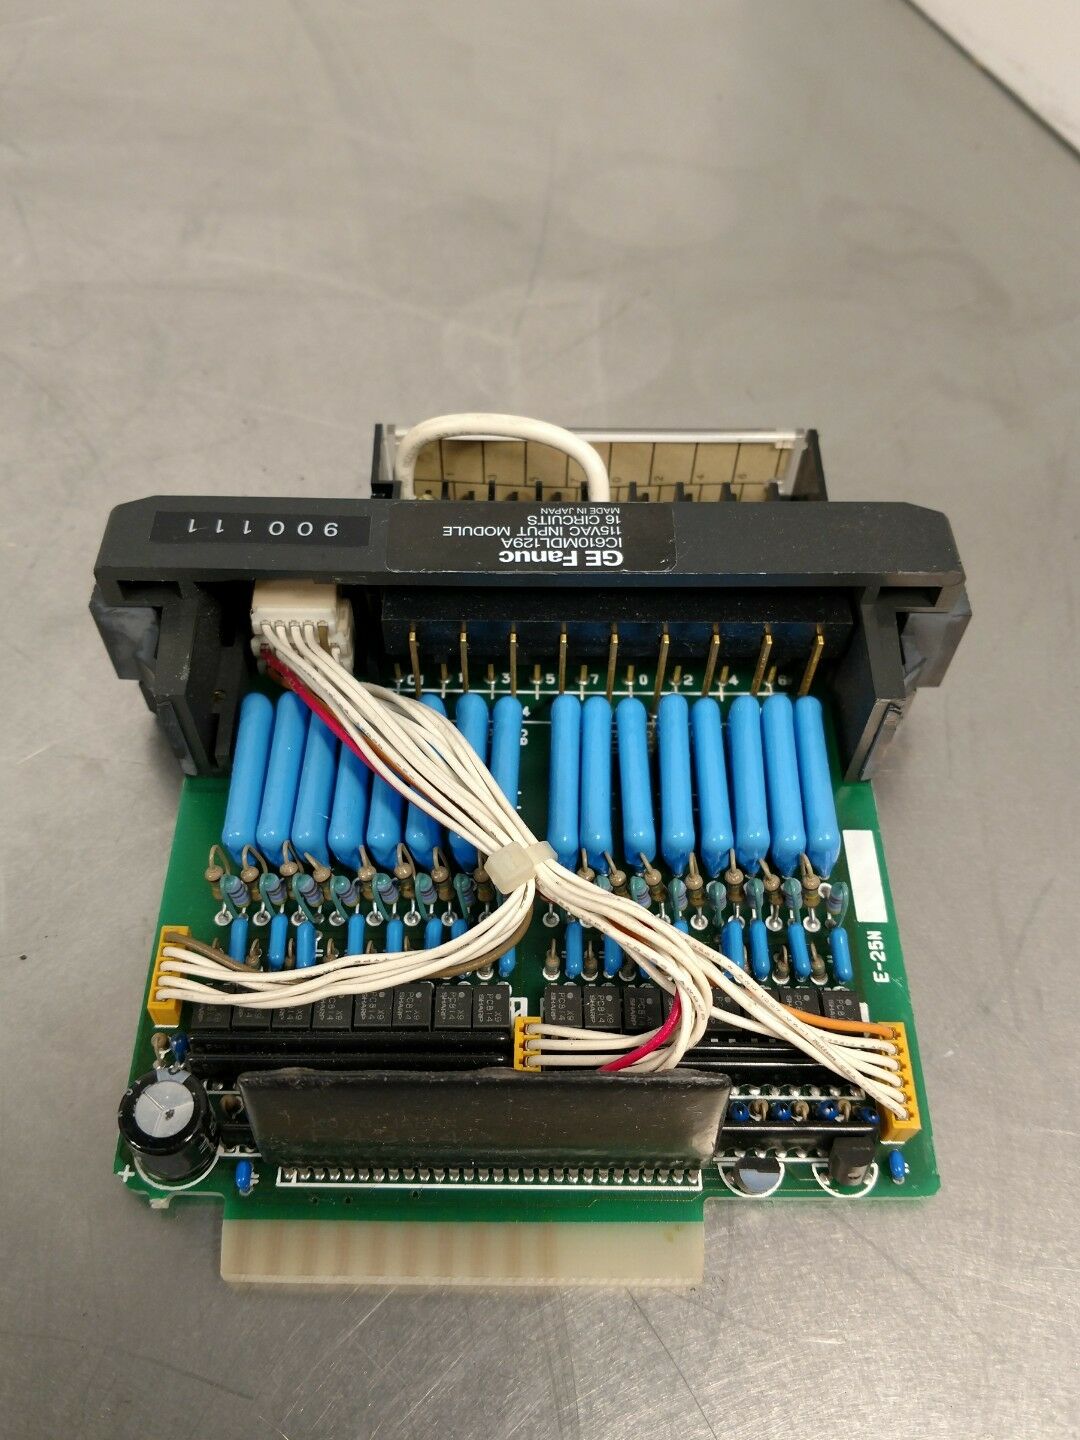 GE FANUC IC610MDL129A 115VAC Input Module 8-Circuits w/ Terminal Block CP     3F